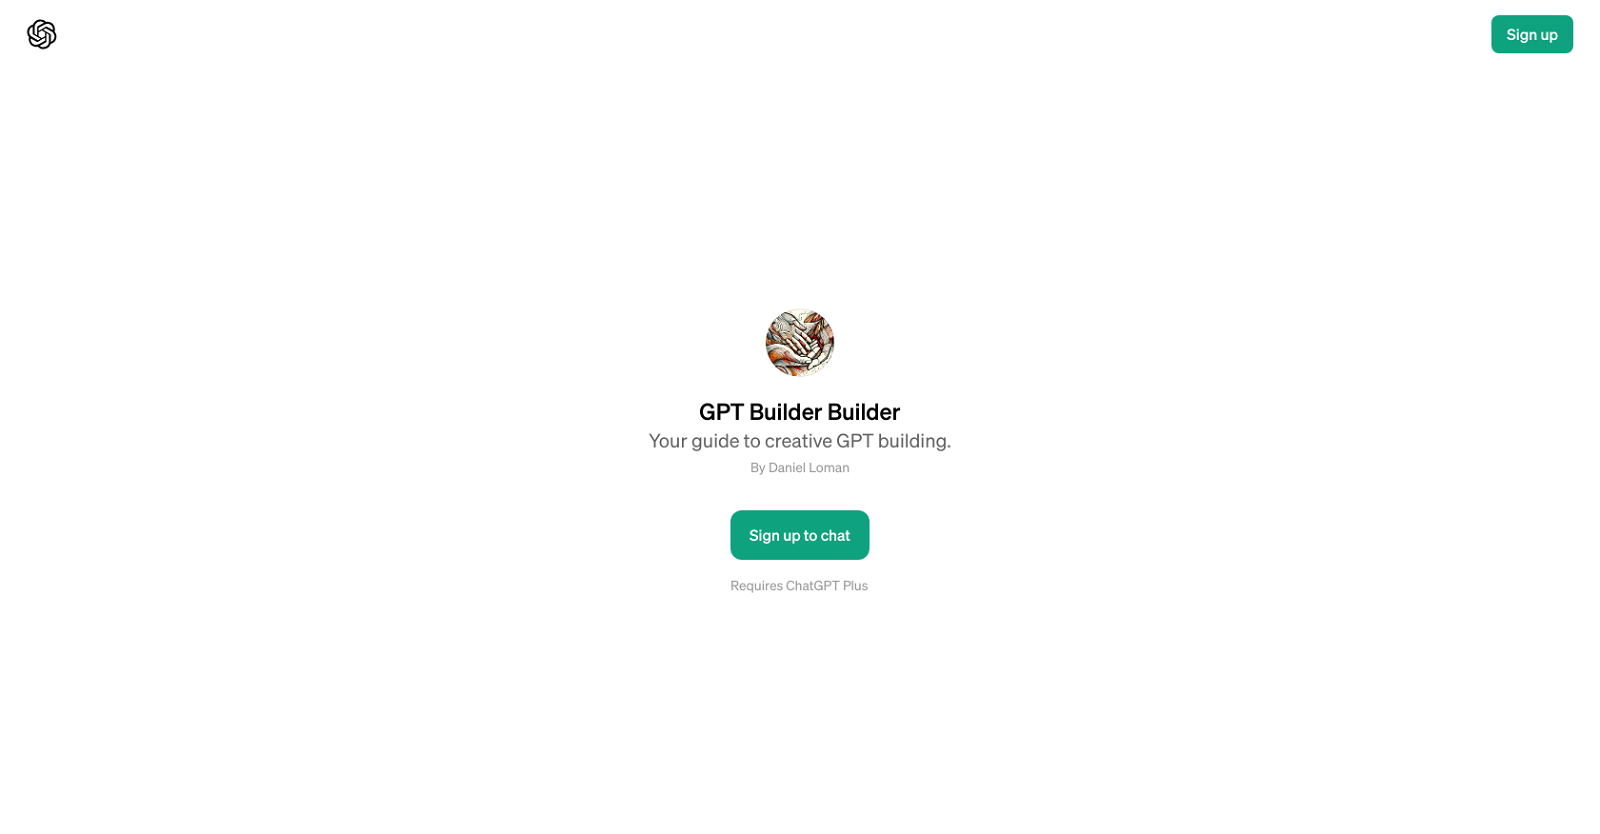 GPT Builder Builder website